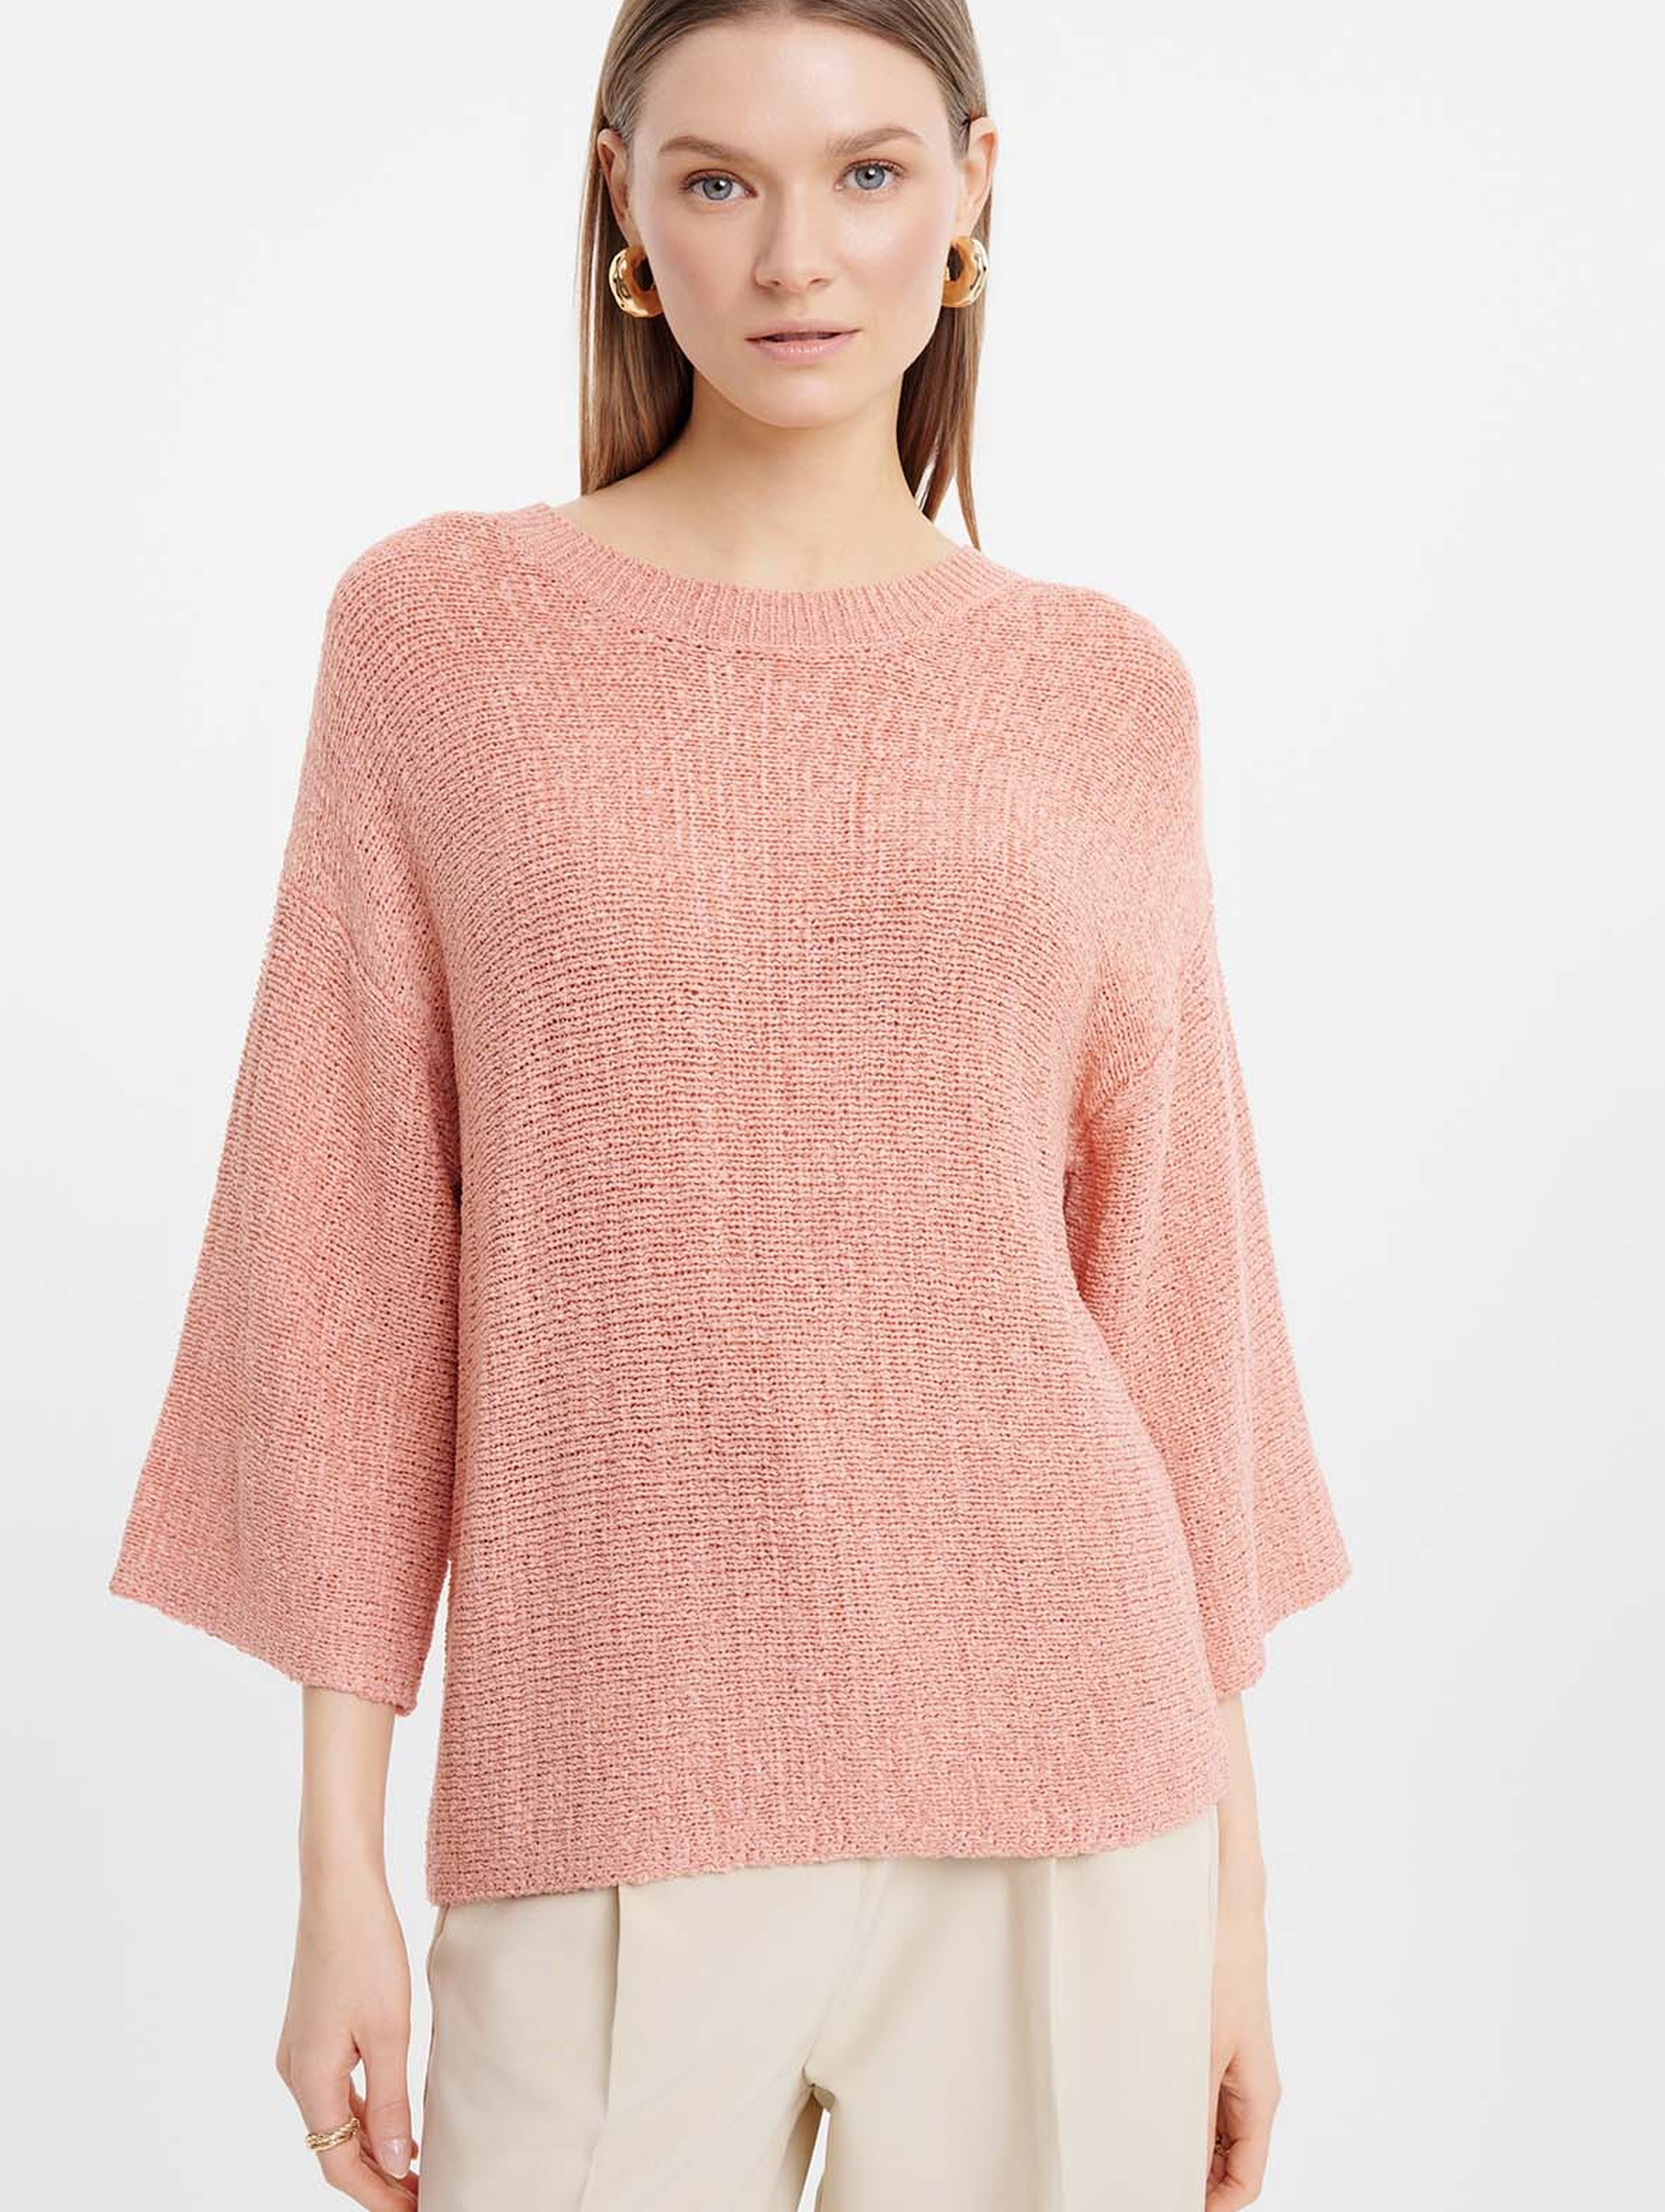 Dzianinowy różowy sweter damski z szerokim rękawem